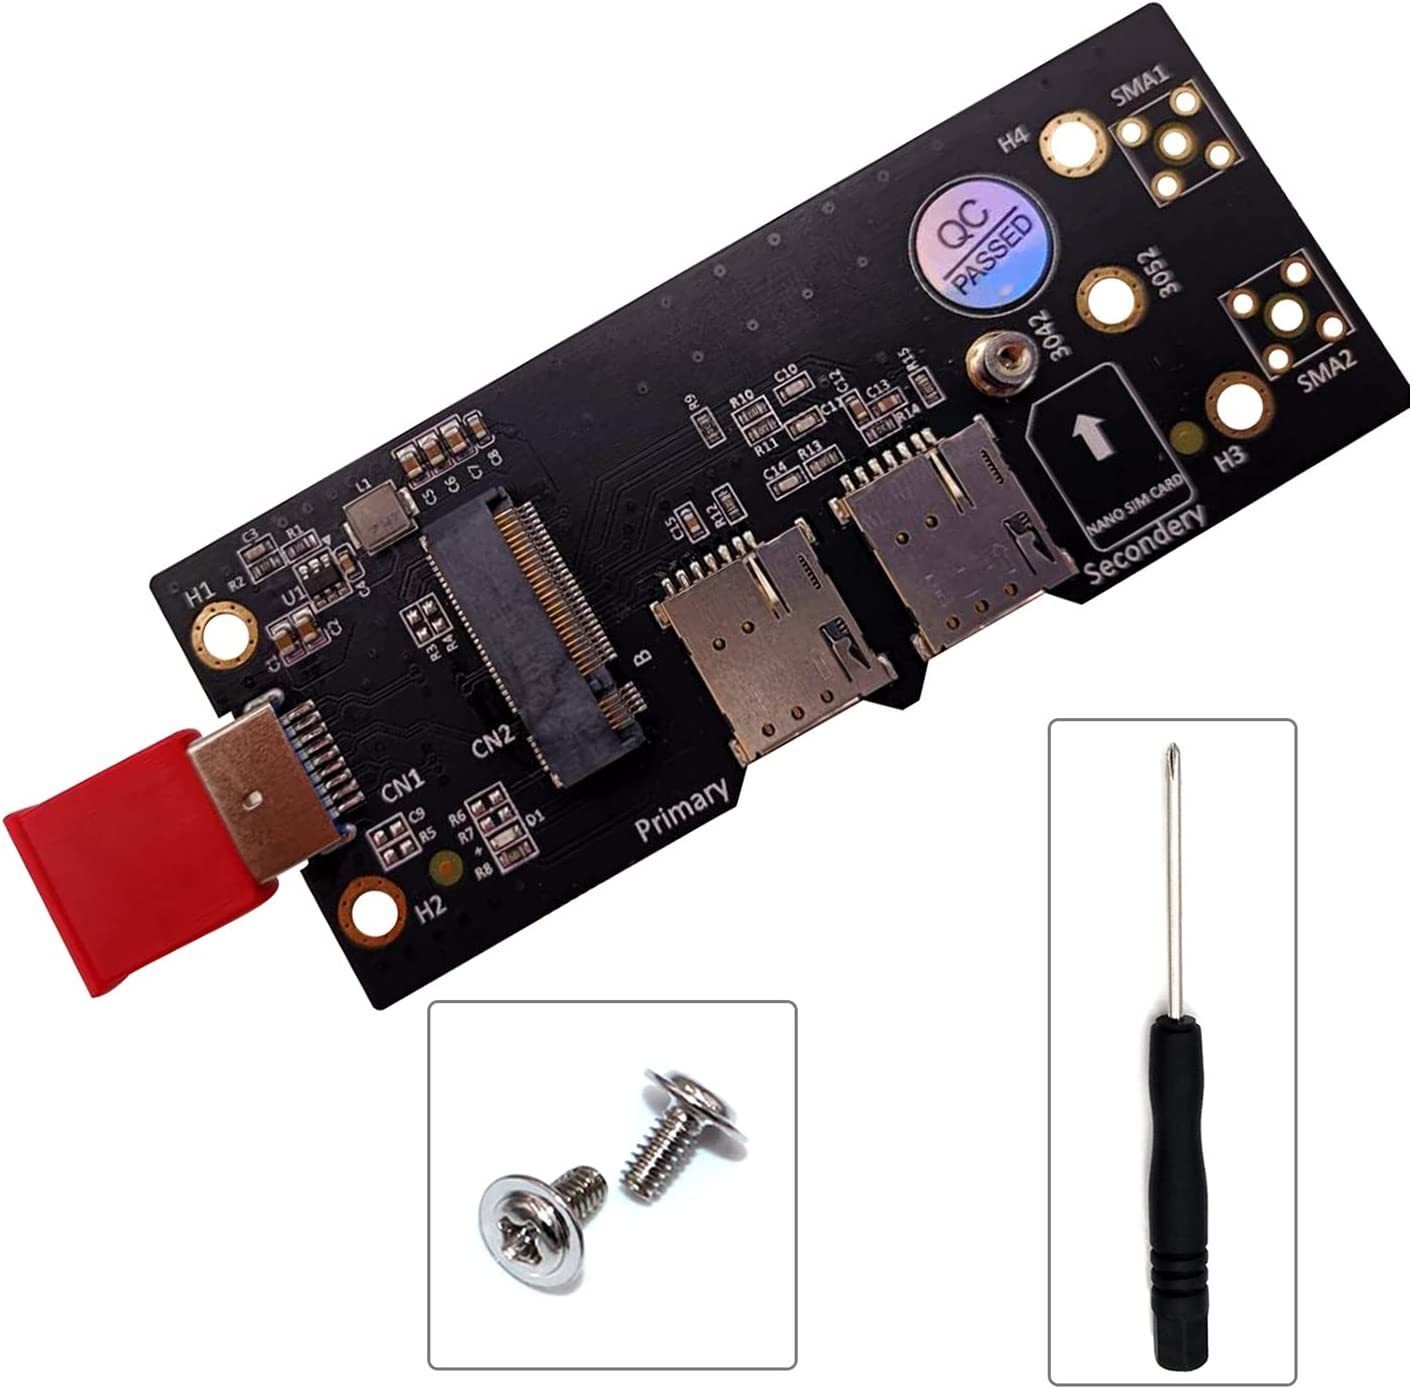  M.2 NGFF Key B na USB 3.0 adaptér s 6pinovým slotem pro dvě SIM karty